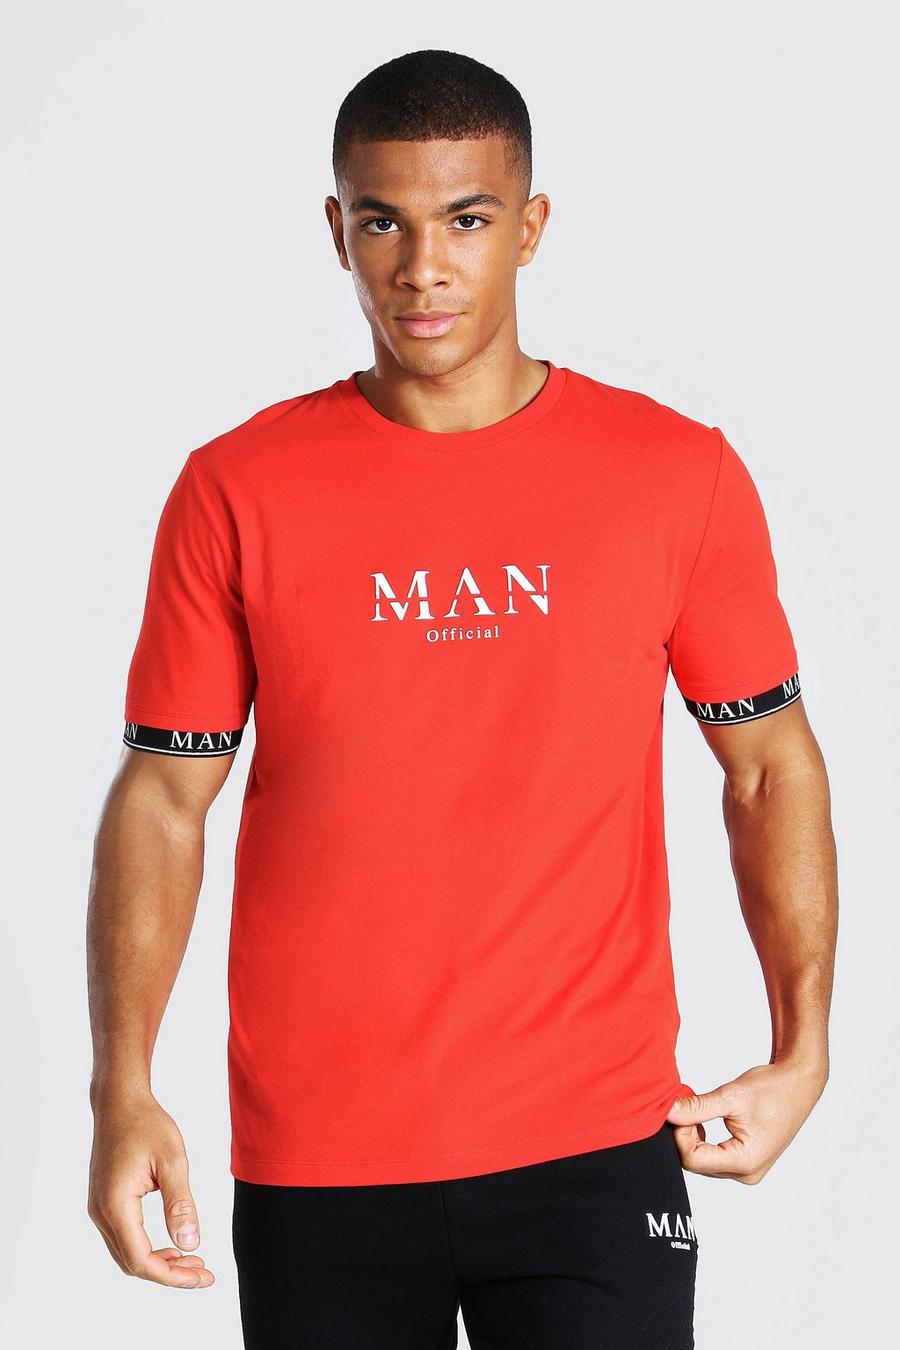 T-shirt Man a caratteri romani con fascette sulla parte finale del polsino, Rosso fuoco image number 1